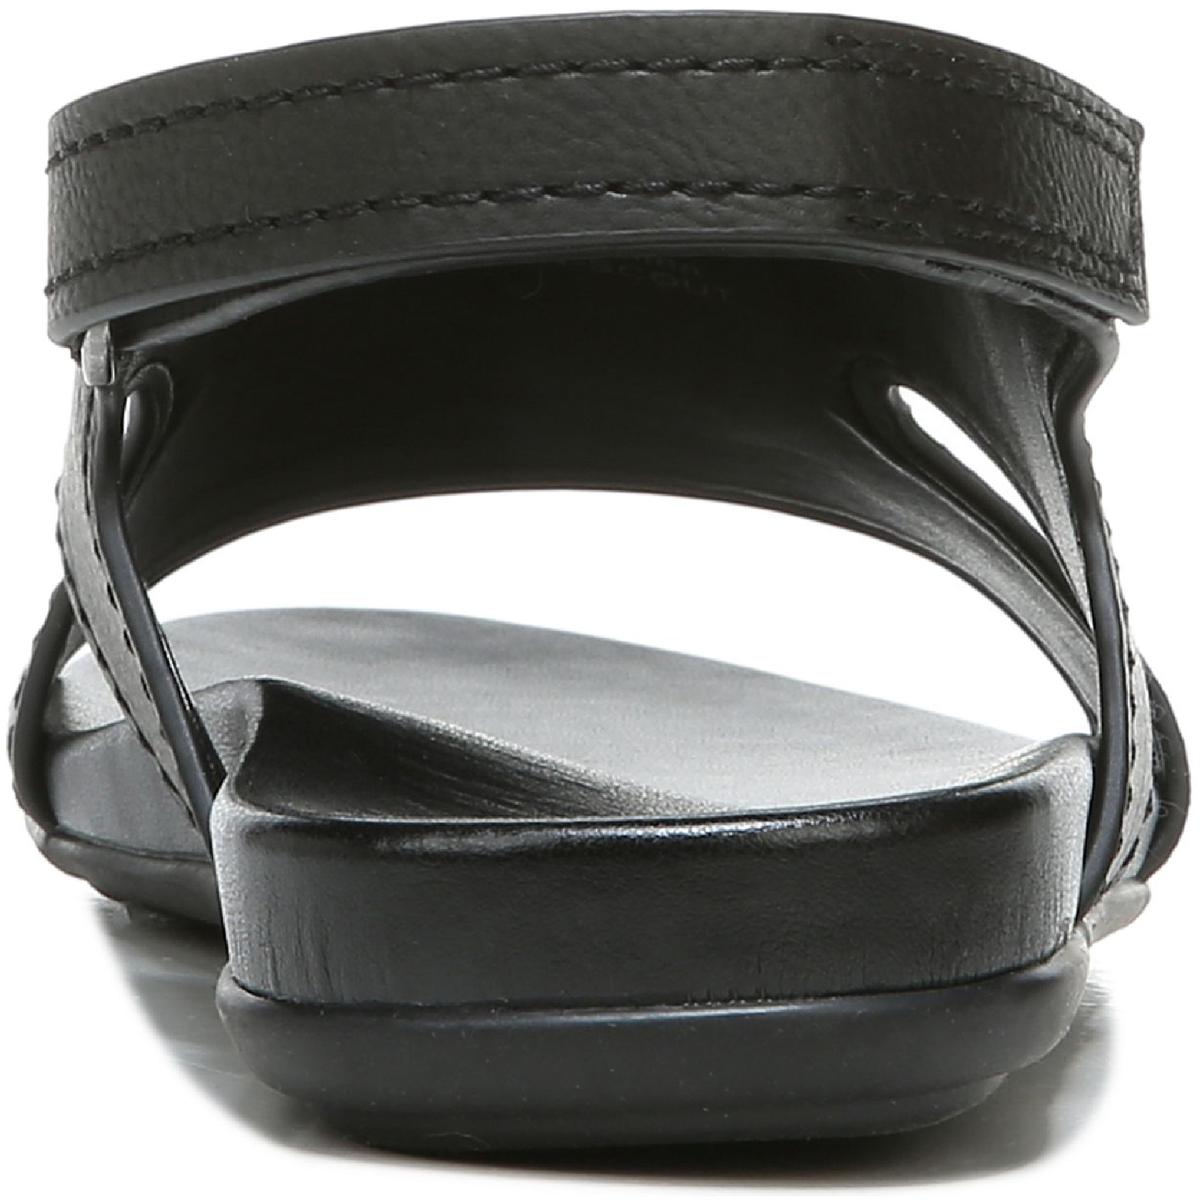 Naturalizer Womens Nxtgen-Scout Faux Leather Slingback Sandals Shoes ...